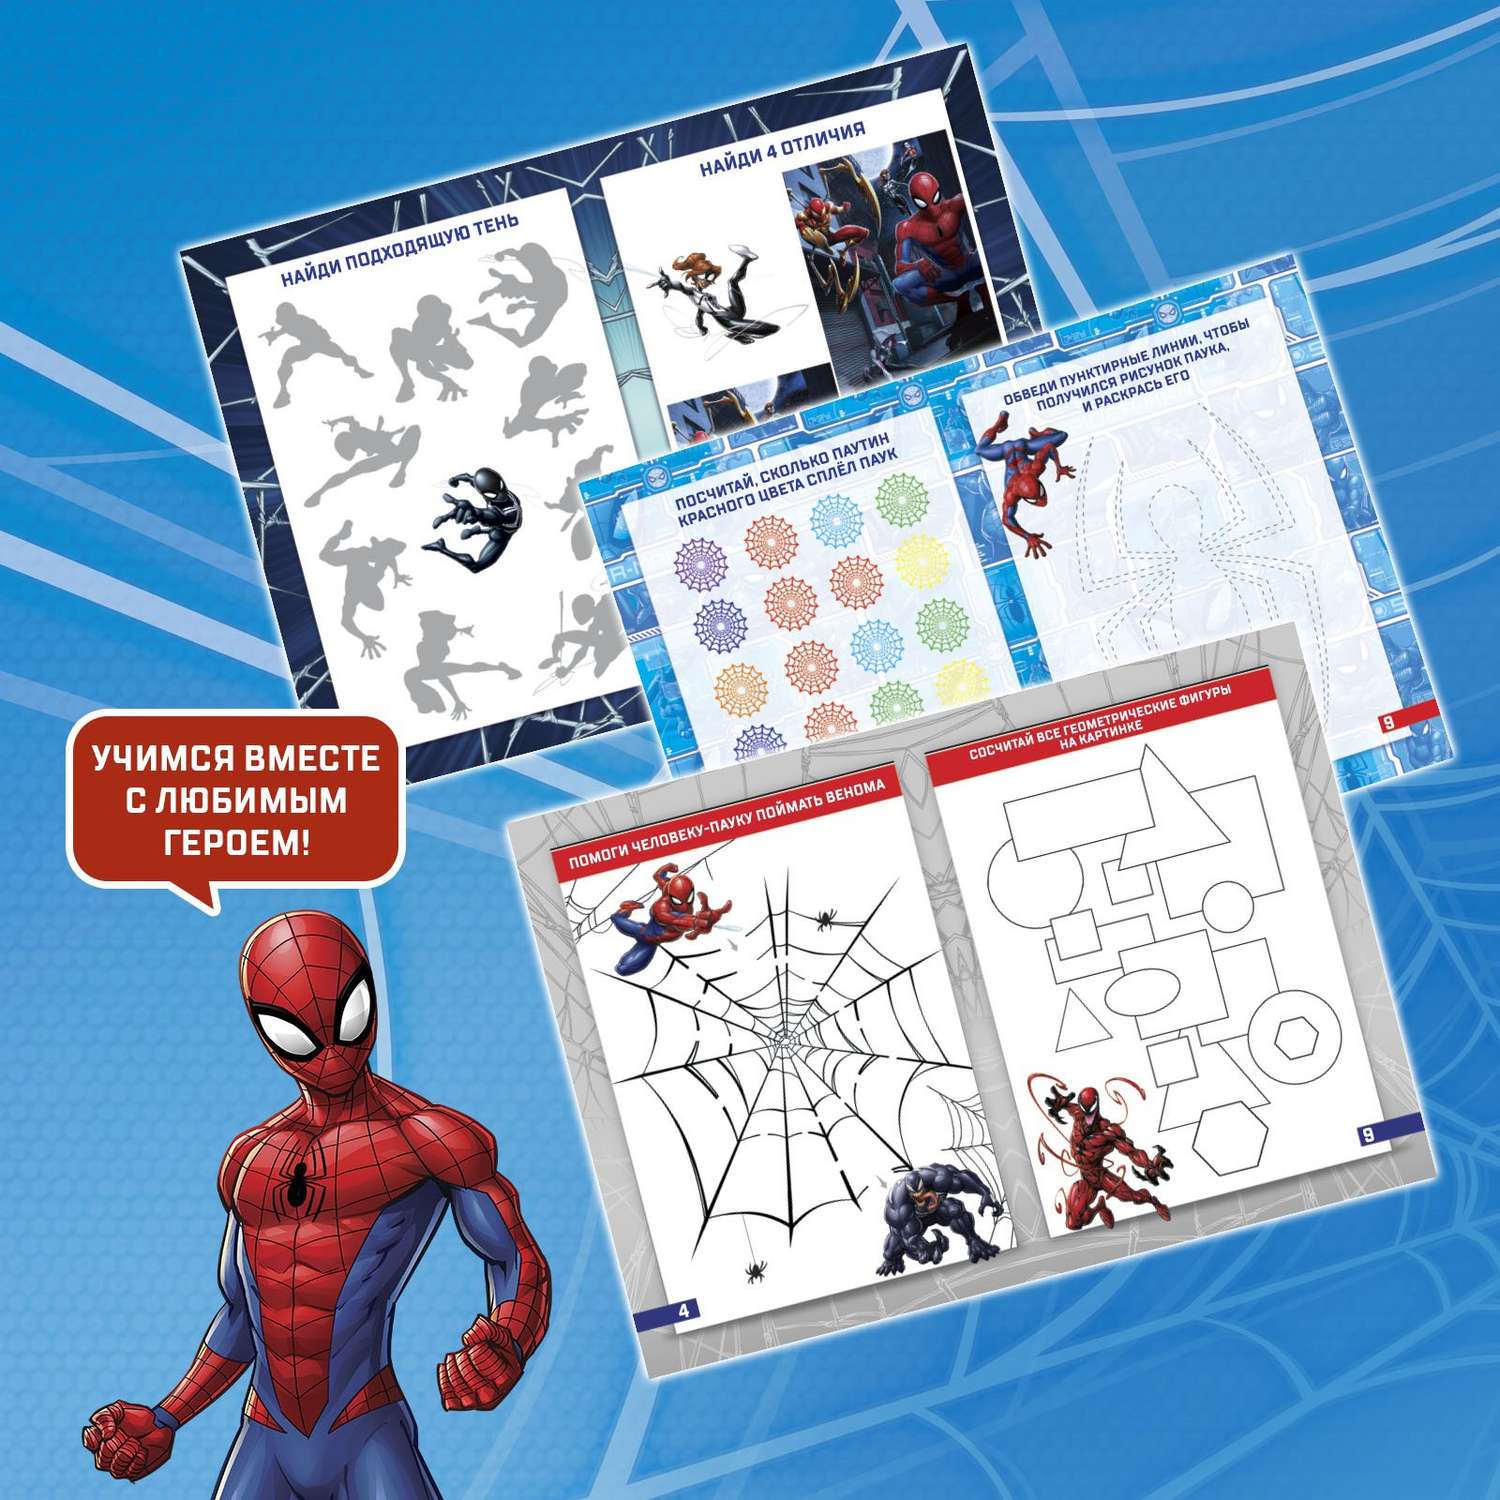 Игровой MARVEL набор с проектором «Человек-паук» 3 книжки - фото 2